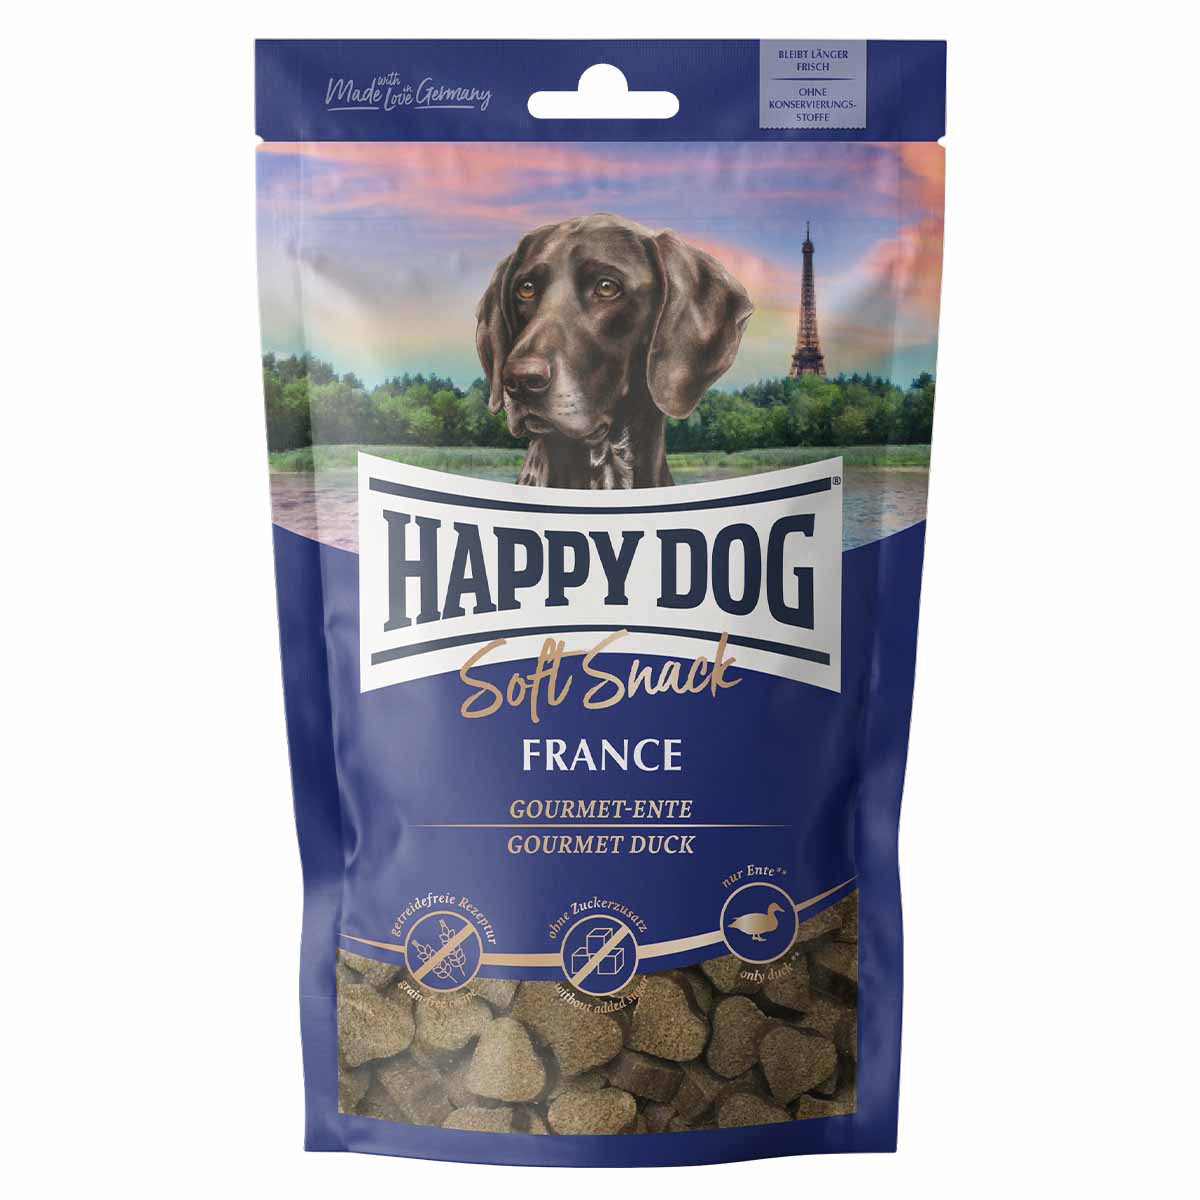 happy dog soft snacks france 1